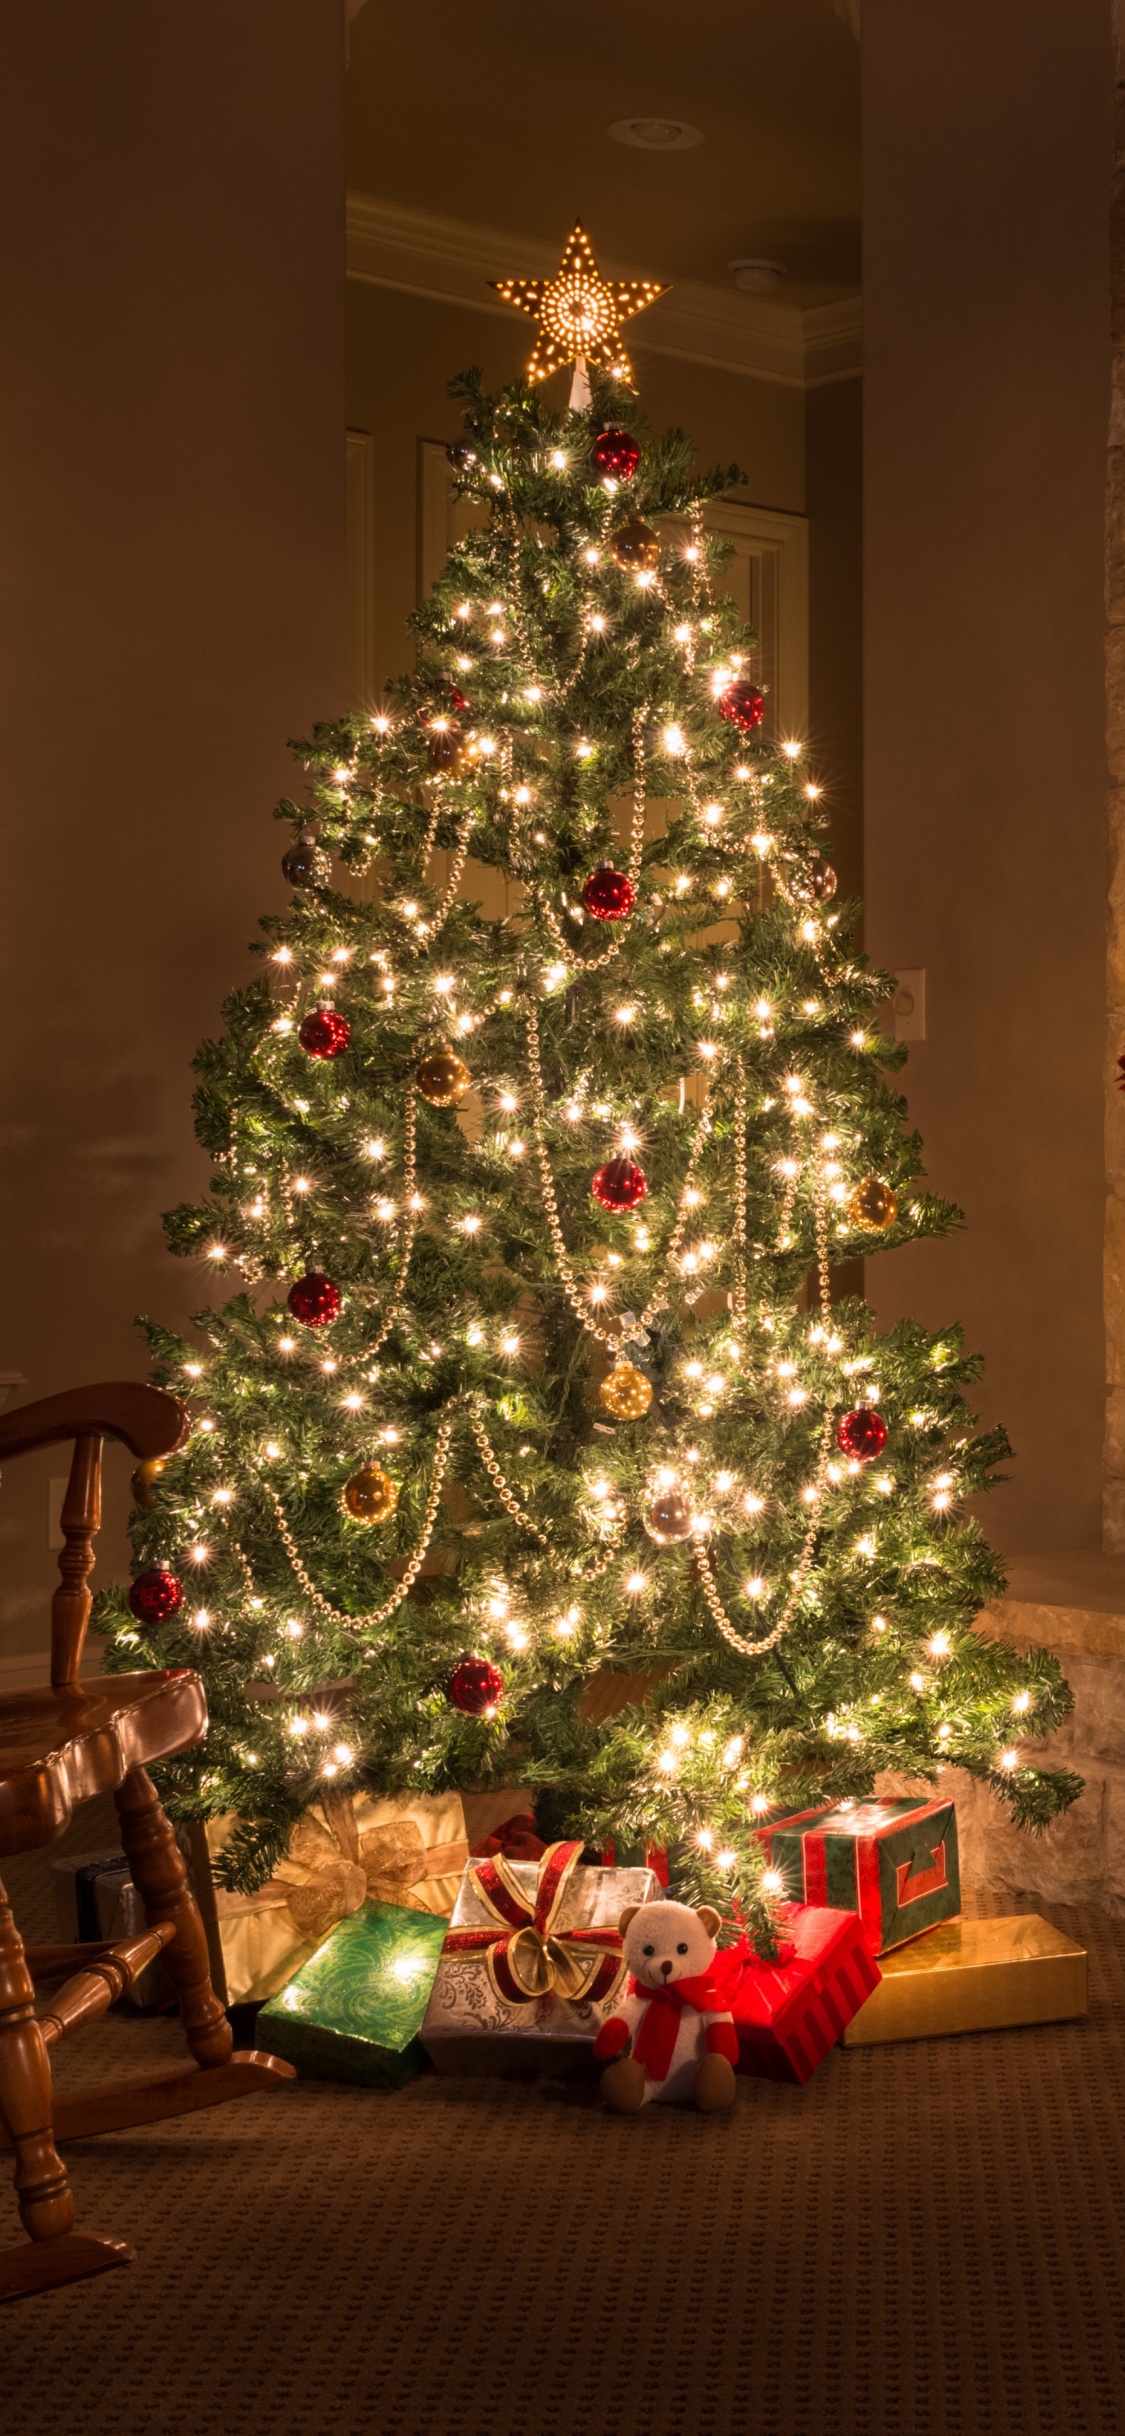 圣诞节那天, 圣诞装饰, 圣诞树, 圣诞节, 圣诞前夕 壁纸 1125x2436 允许